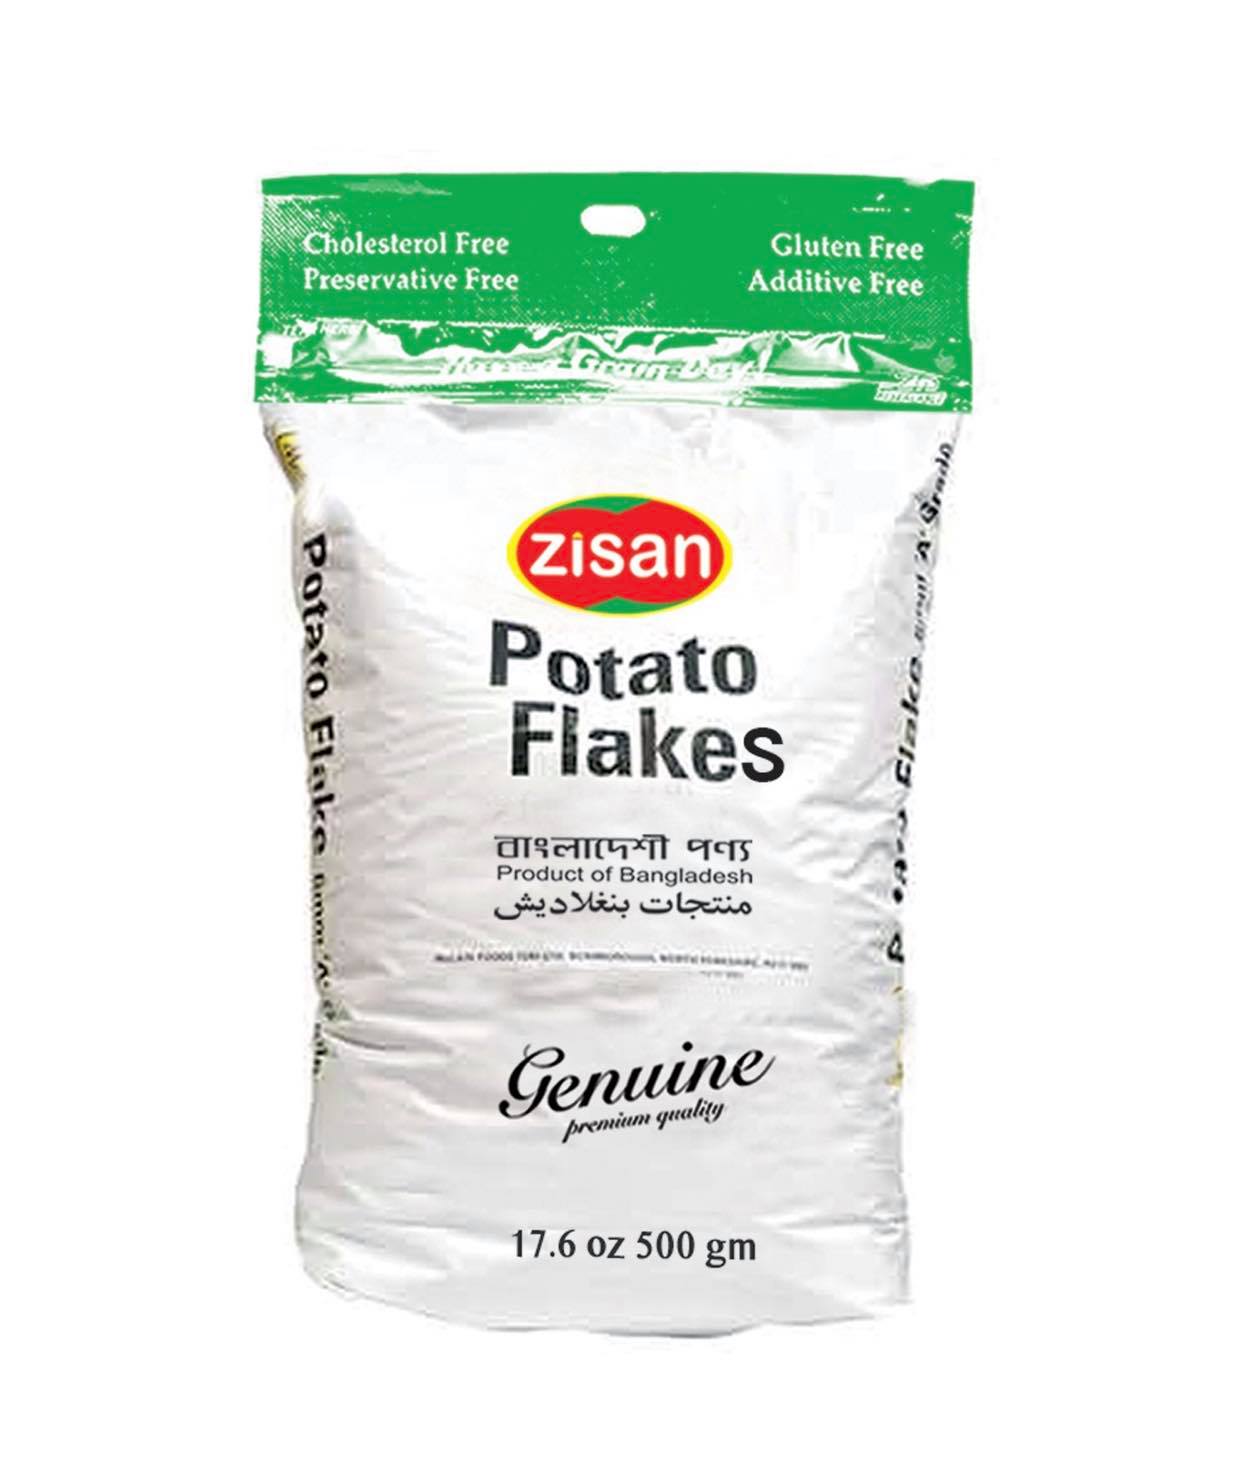 Zisan Potato Flakes